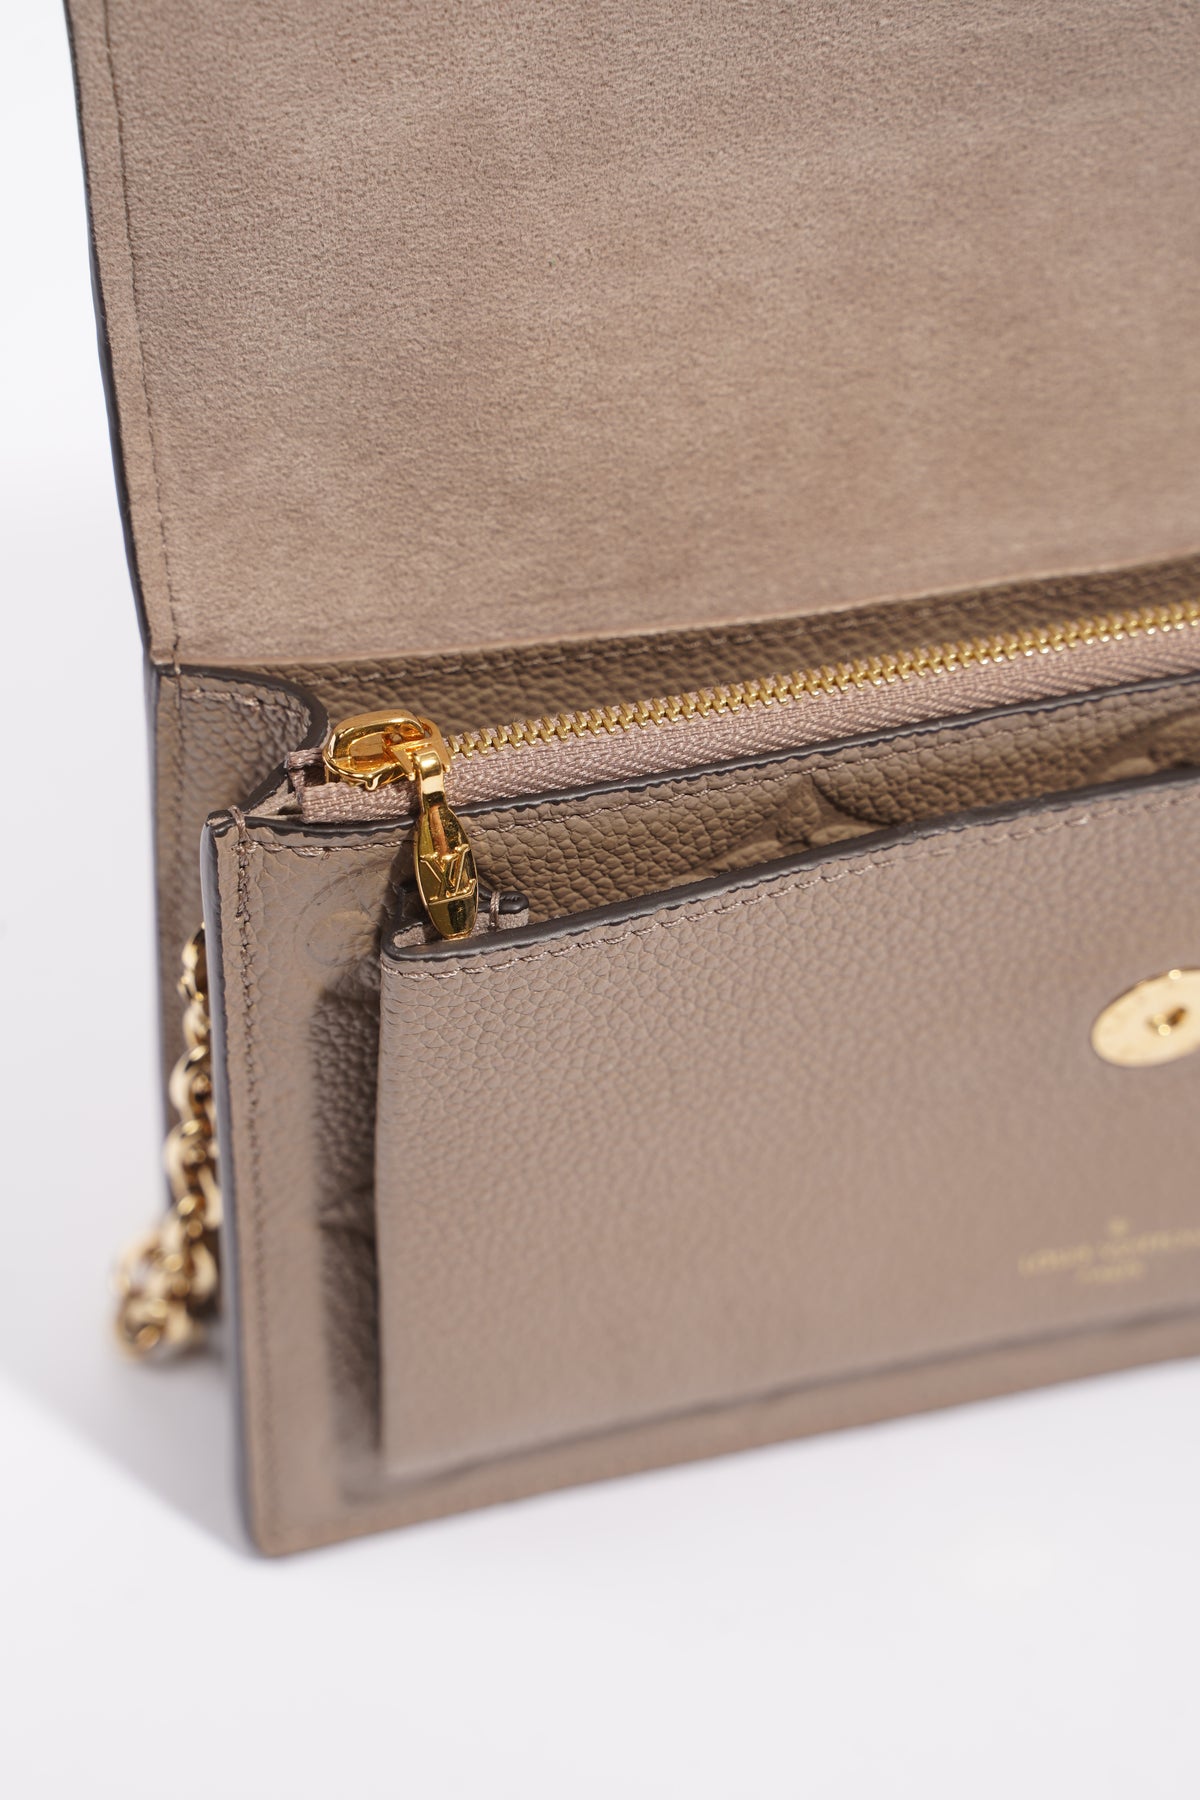 Shop Louis Vuitton MONOGRAM EMPREINTE Vavin chain wallet (M69423, M67839)  by IMPORTfabulous